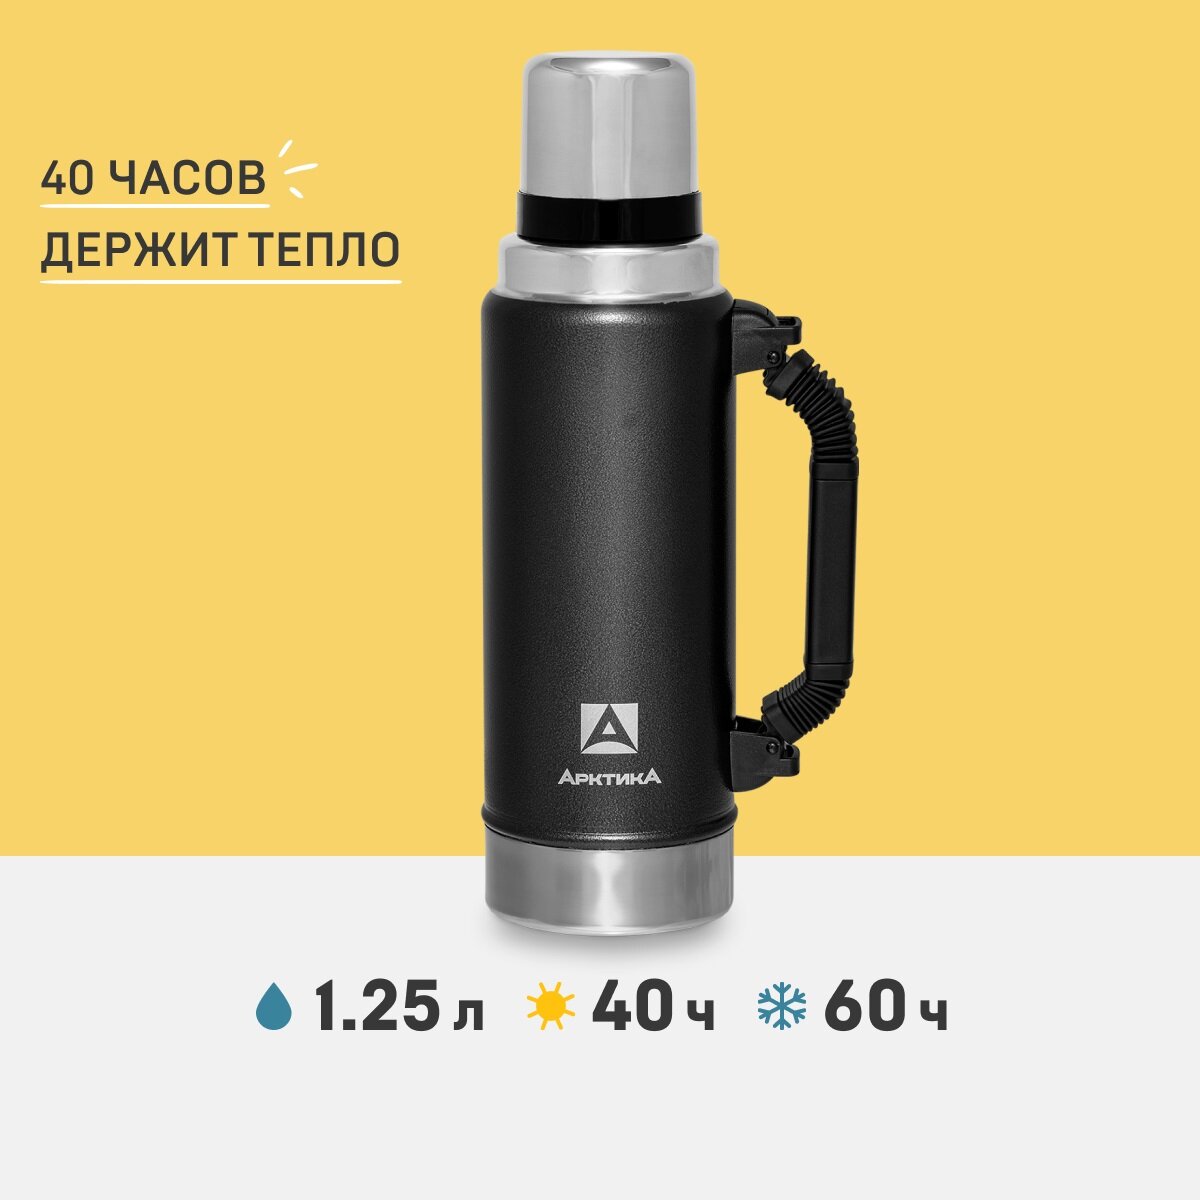 Термос для чая и кофе Арктика 106-1250P "Уазик" черный 1,25 литров со складной ручкой для переноски